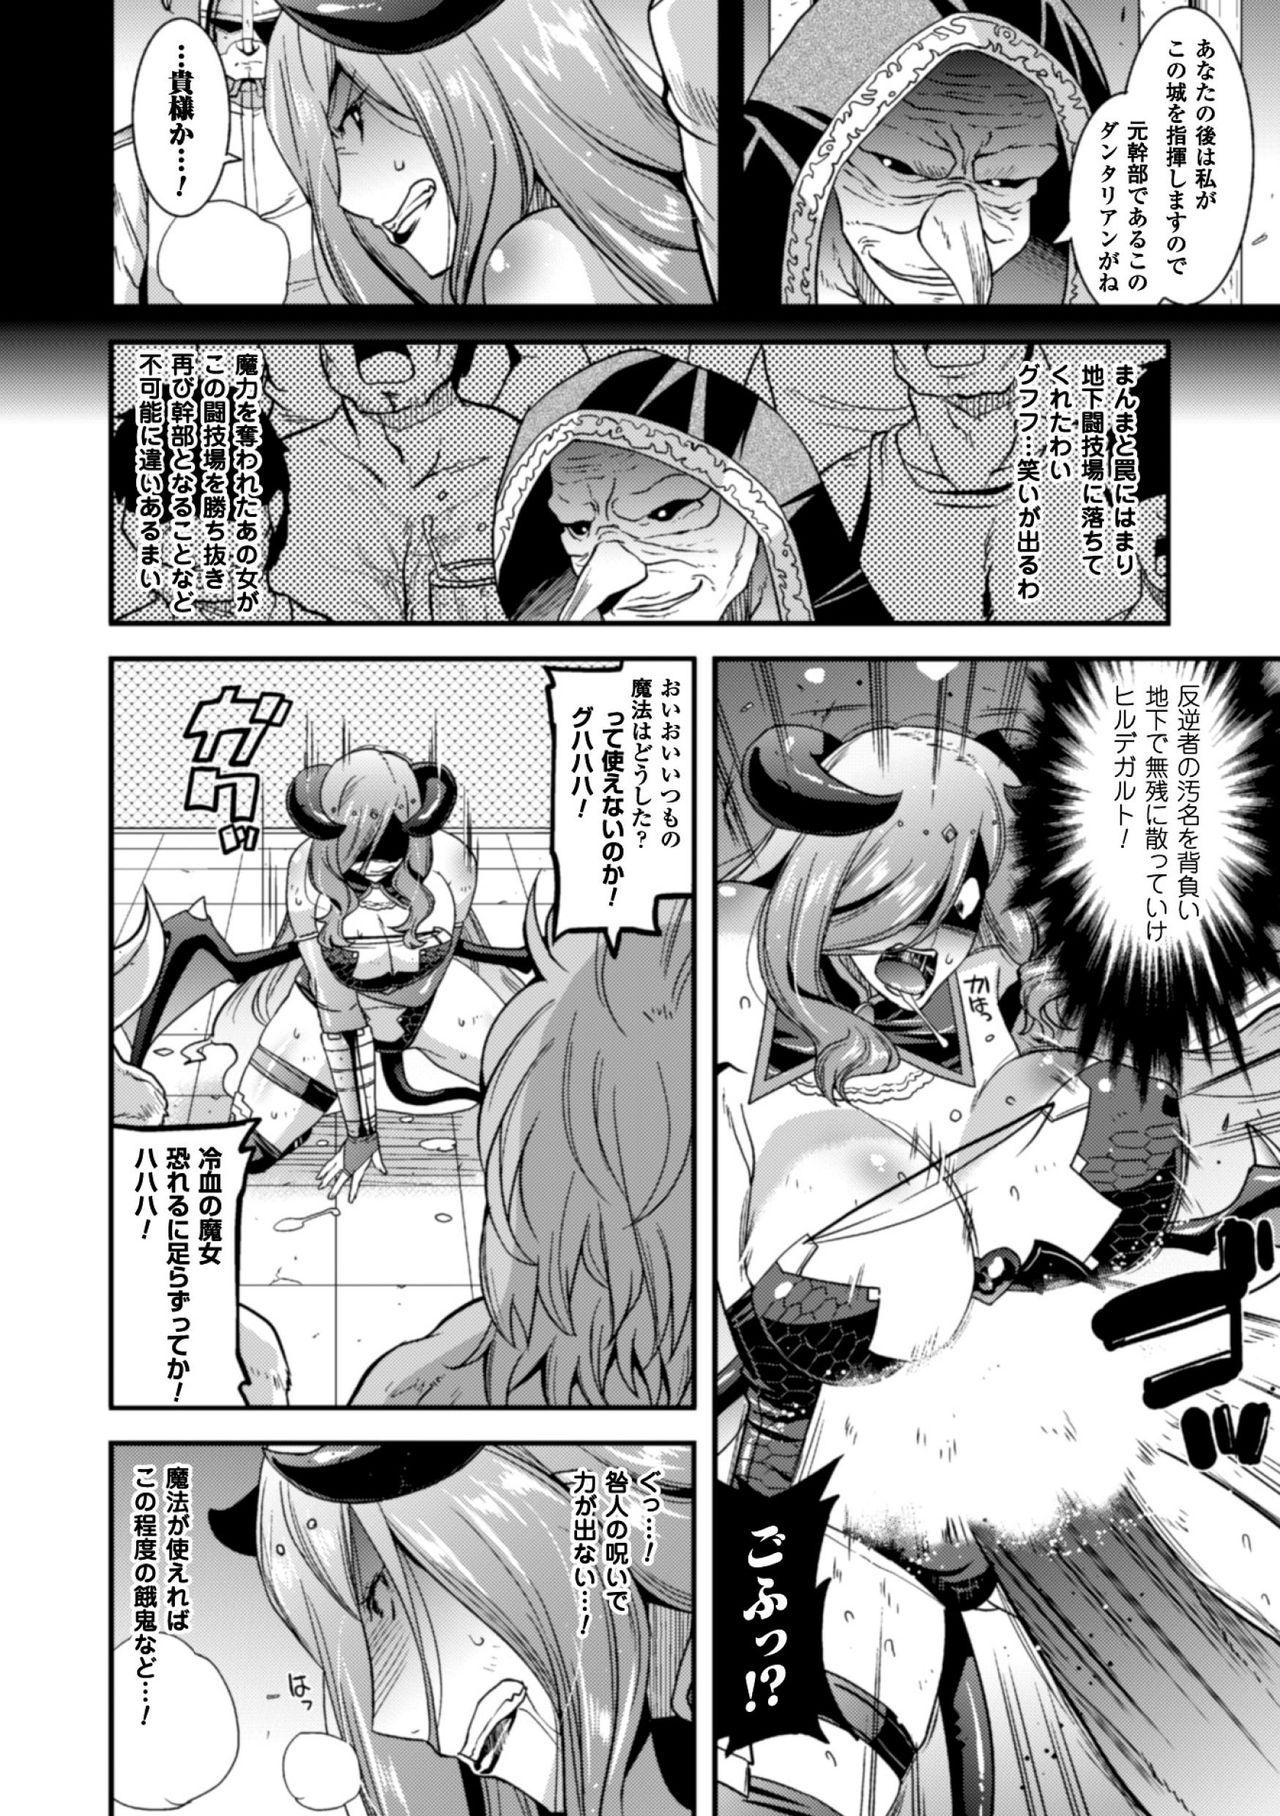 Seigi no Heroine Kangoku File Vol. 9 101